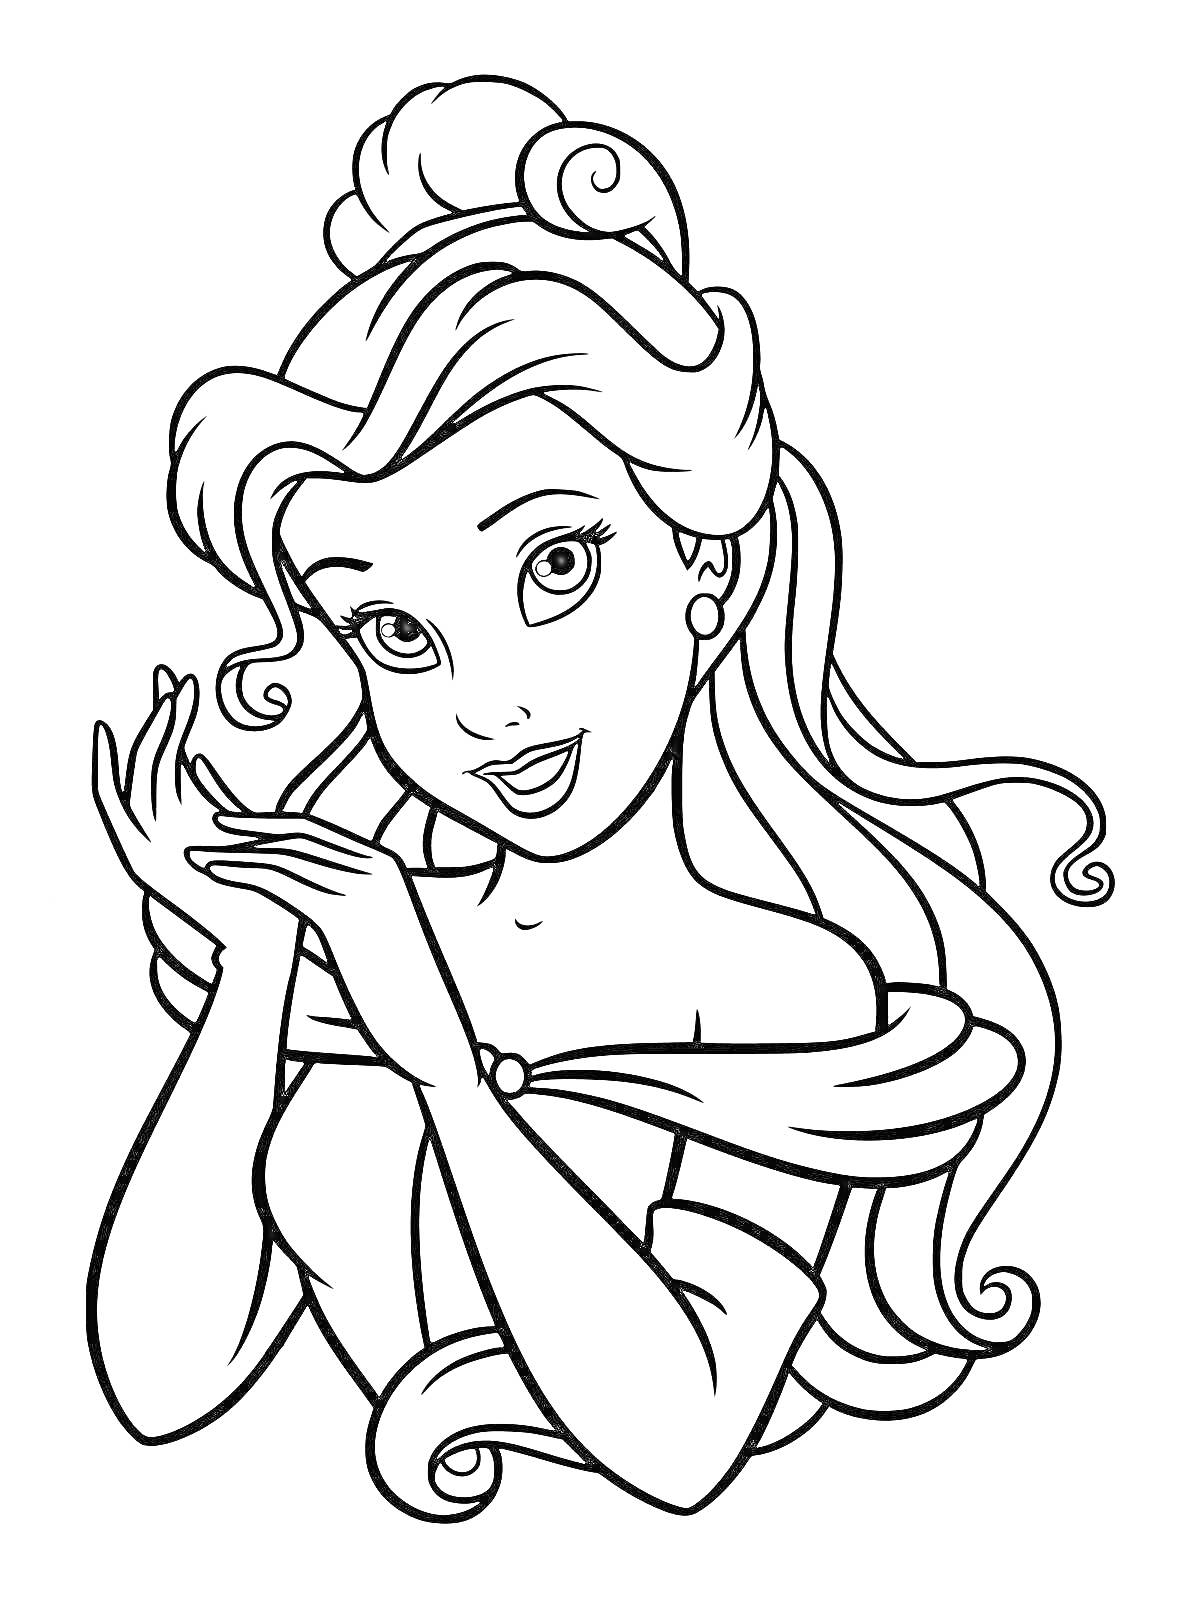 Раскраска Принцесса с распущенными волосами и собранной на макушке прической, в платье с открытыми плечами, сложившая руки перед лицом